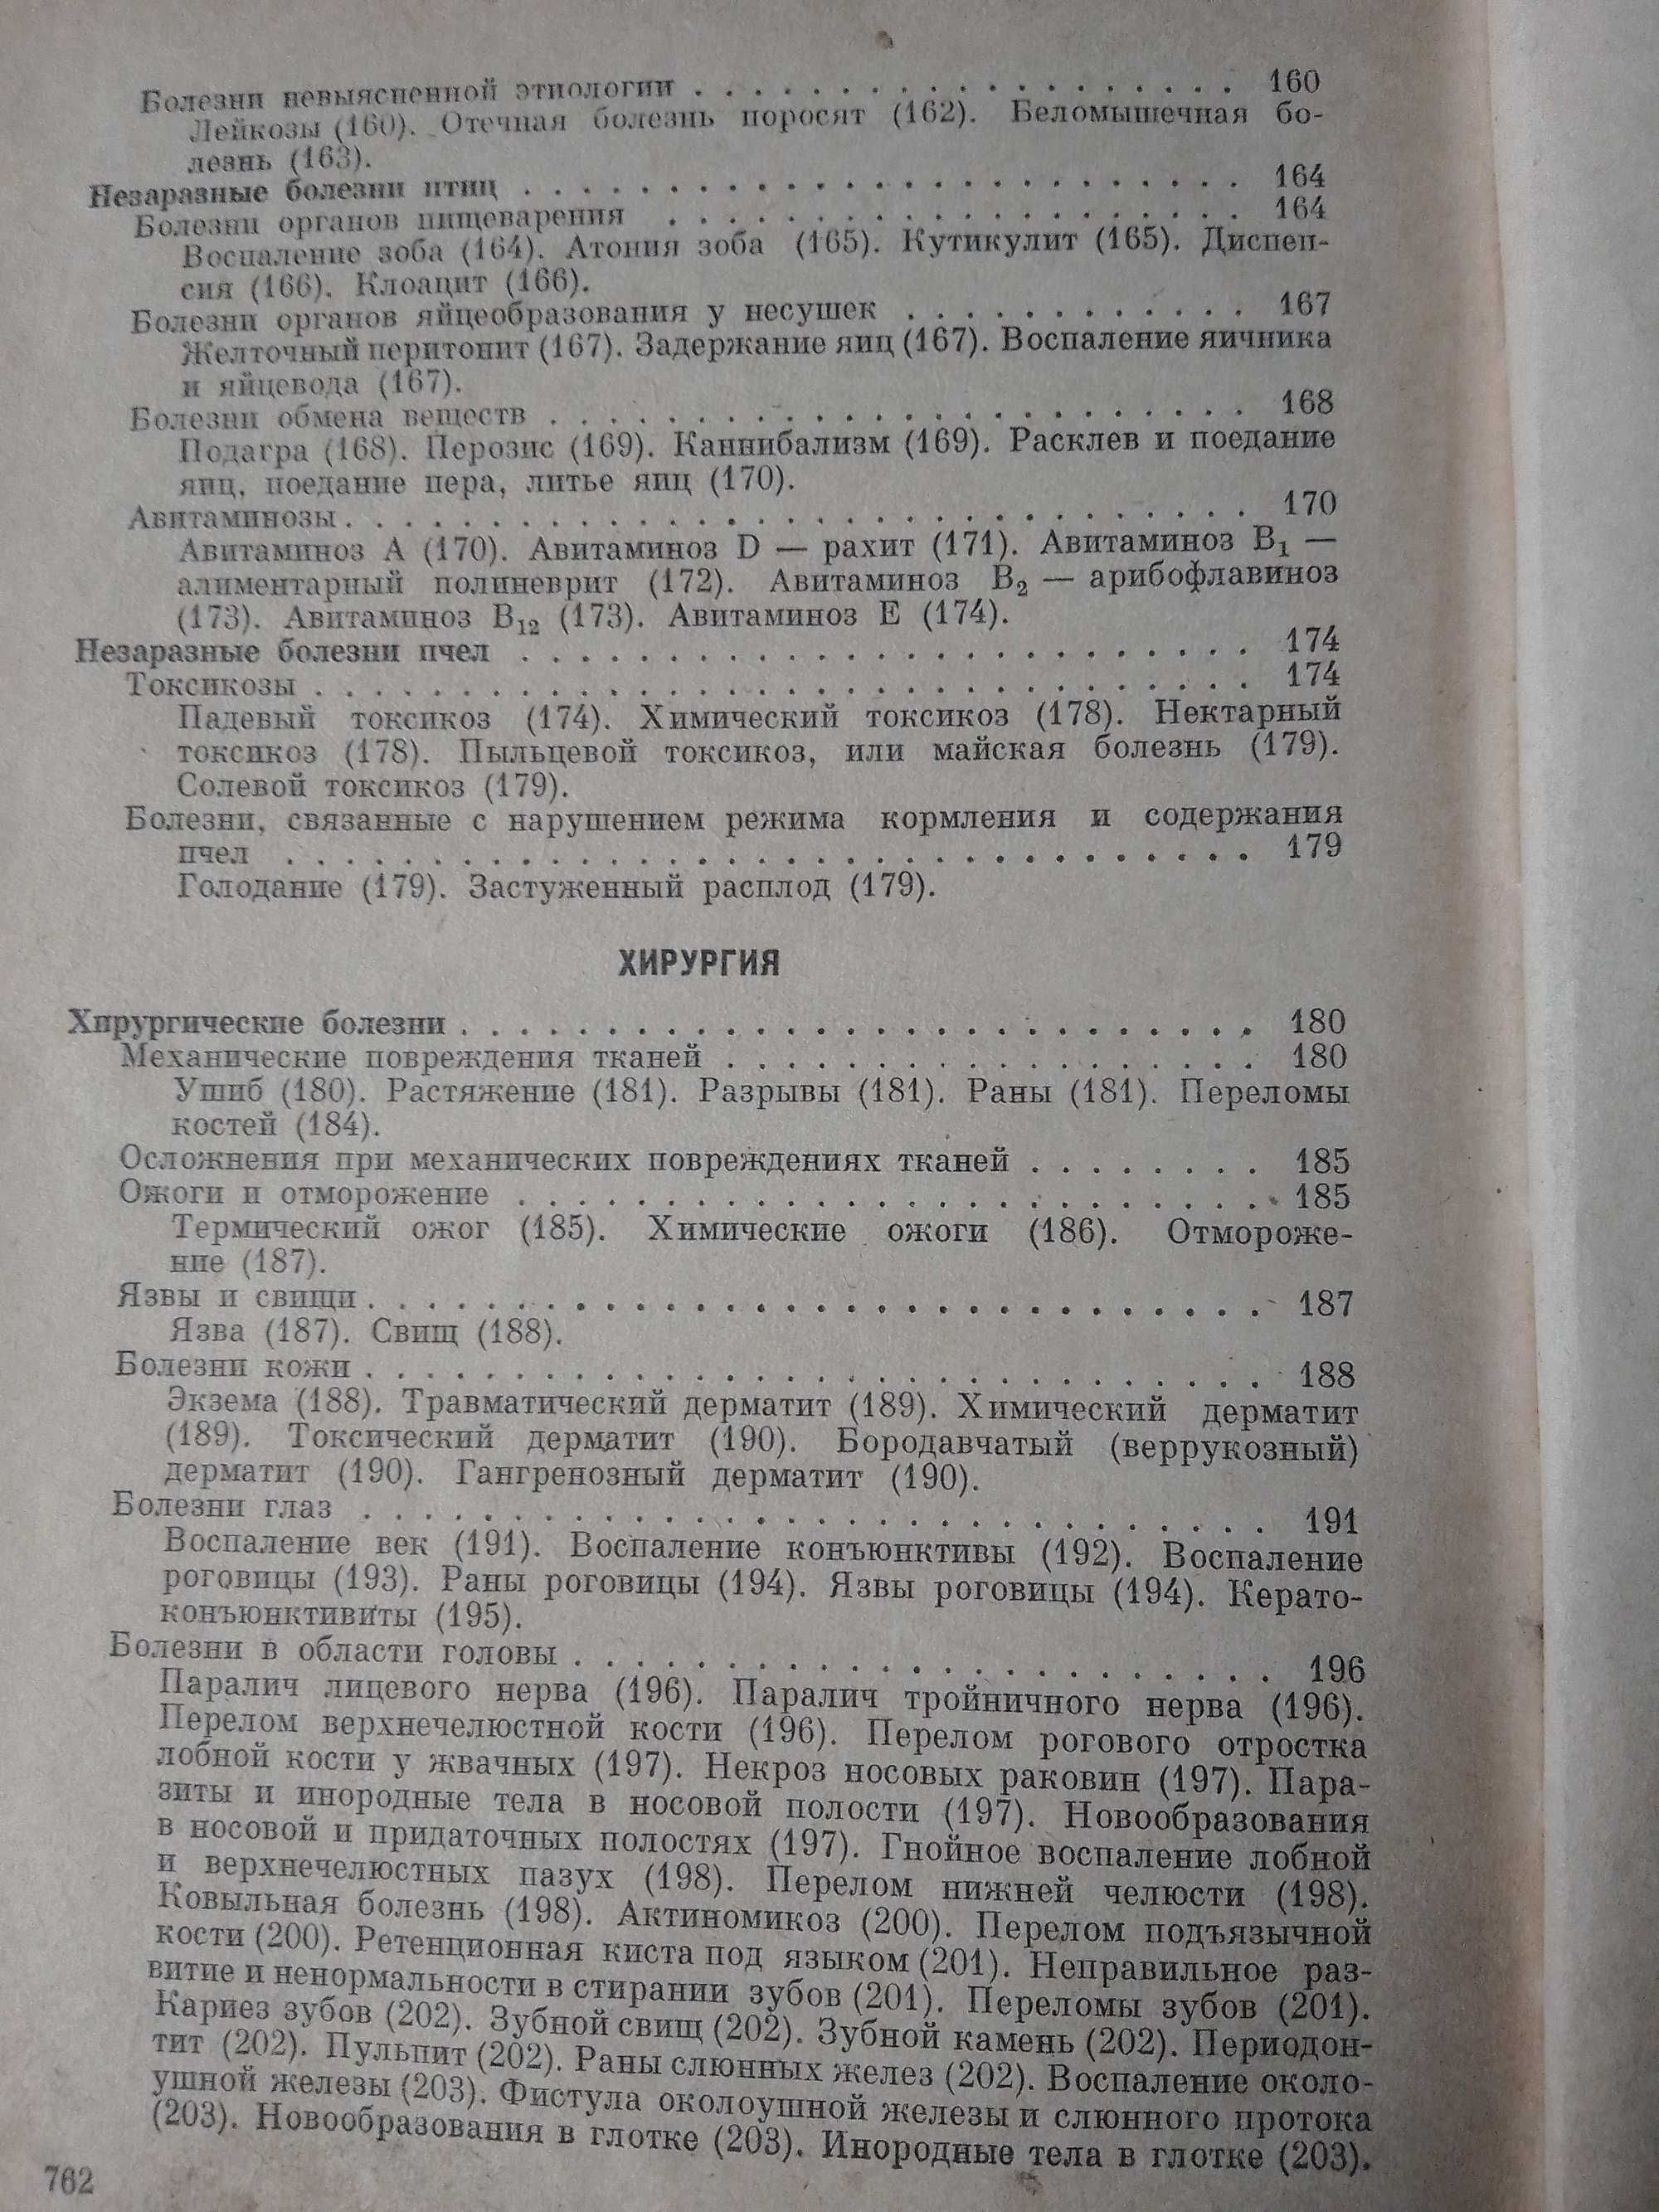 Справочник по ветеринарии 1968!!!